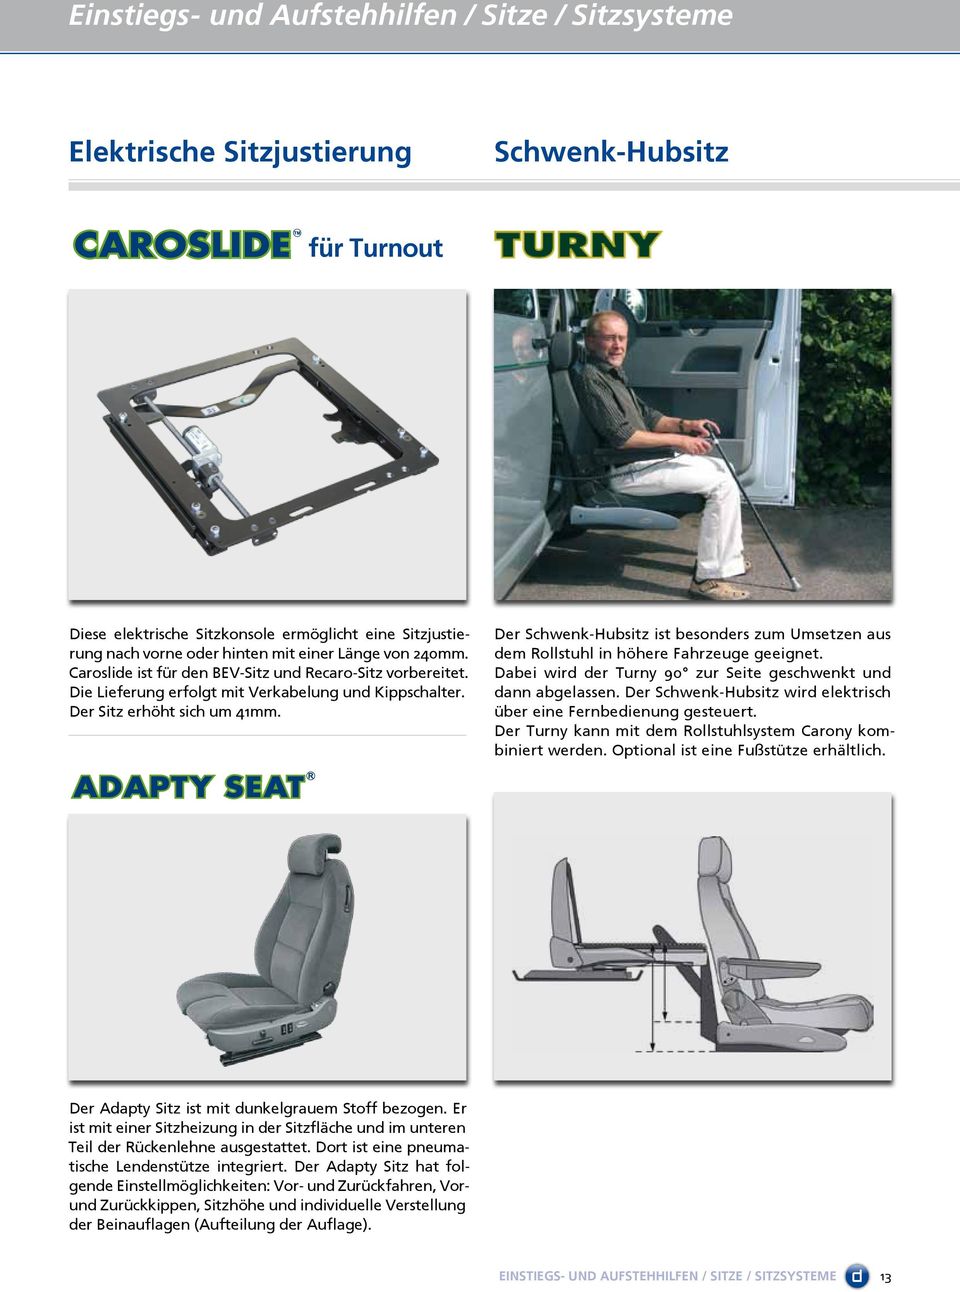 Der Schwenk-Hubsitz ist besonders zum Umsetzen aus dem Rollstuhl in höhere Fahrzeuge geeignet. Dabei wird der Turny 90 zur Seite geschwenkt und dann abgelassen.